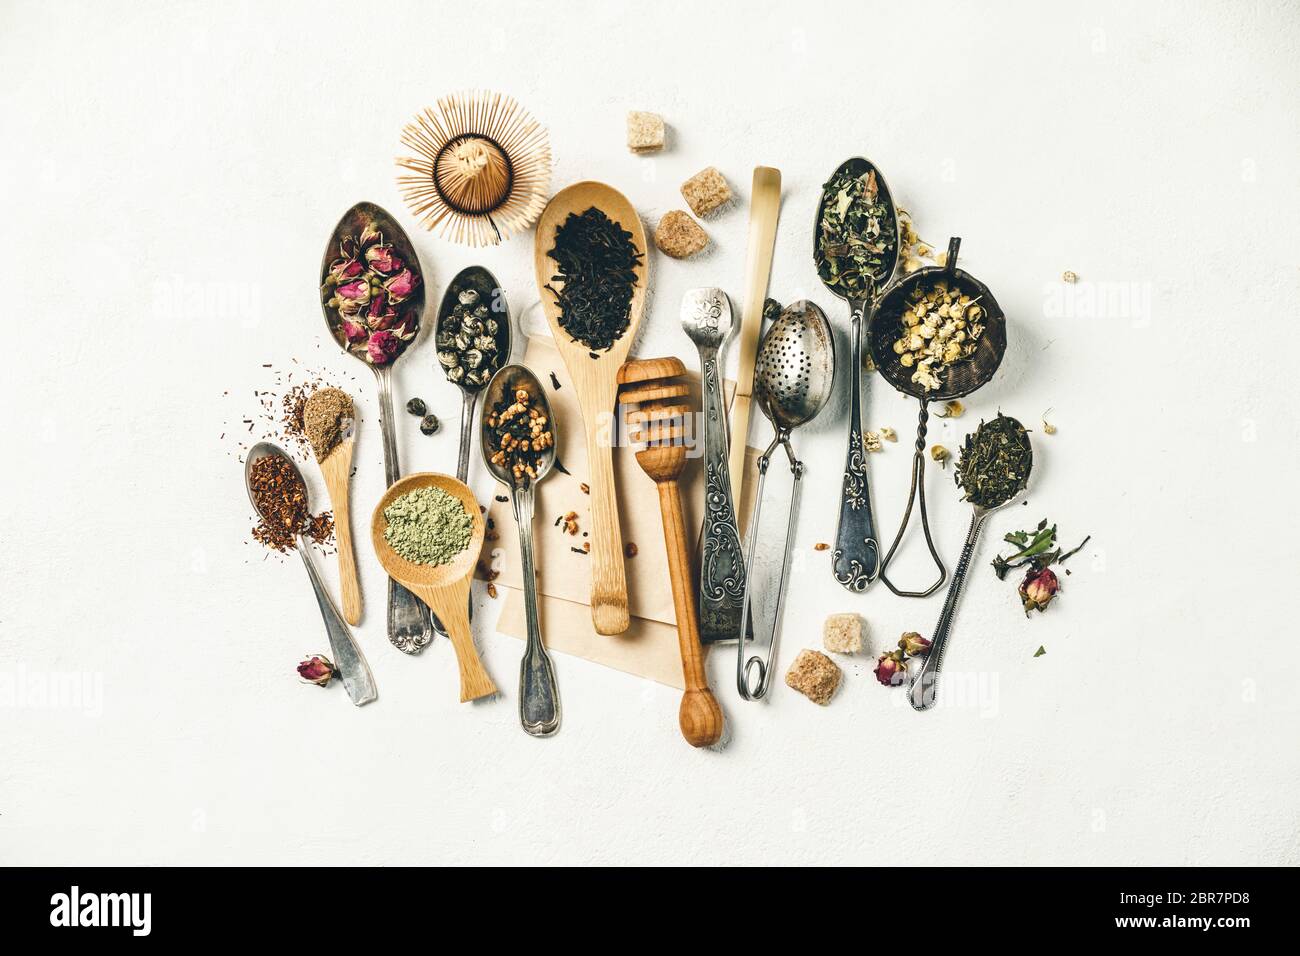 Composizione creativa con vari tipi di tè secco, cucchiai di argento e bambù e zucchero su sfondo bianco tela di wintage, posa piatta, vista dall'alto Foto Stock